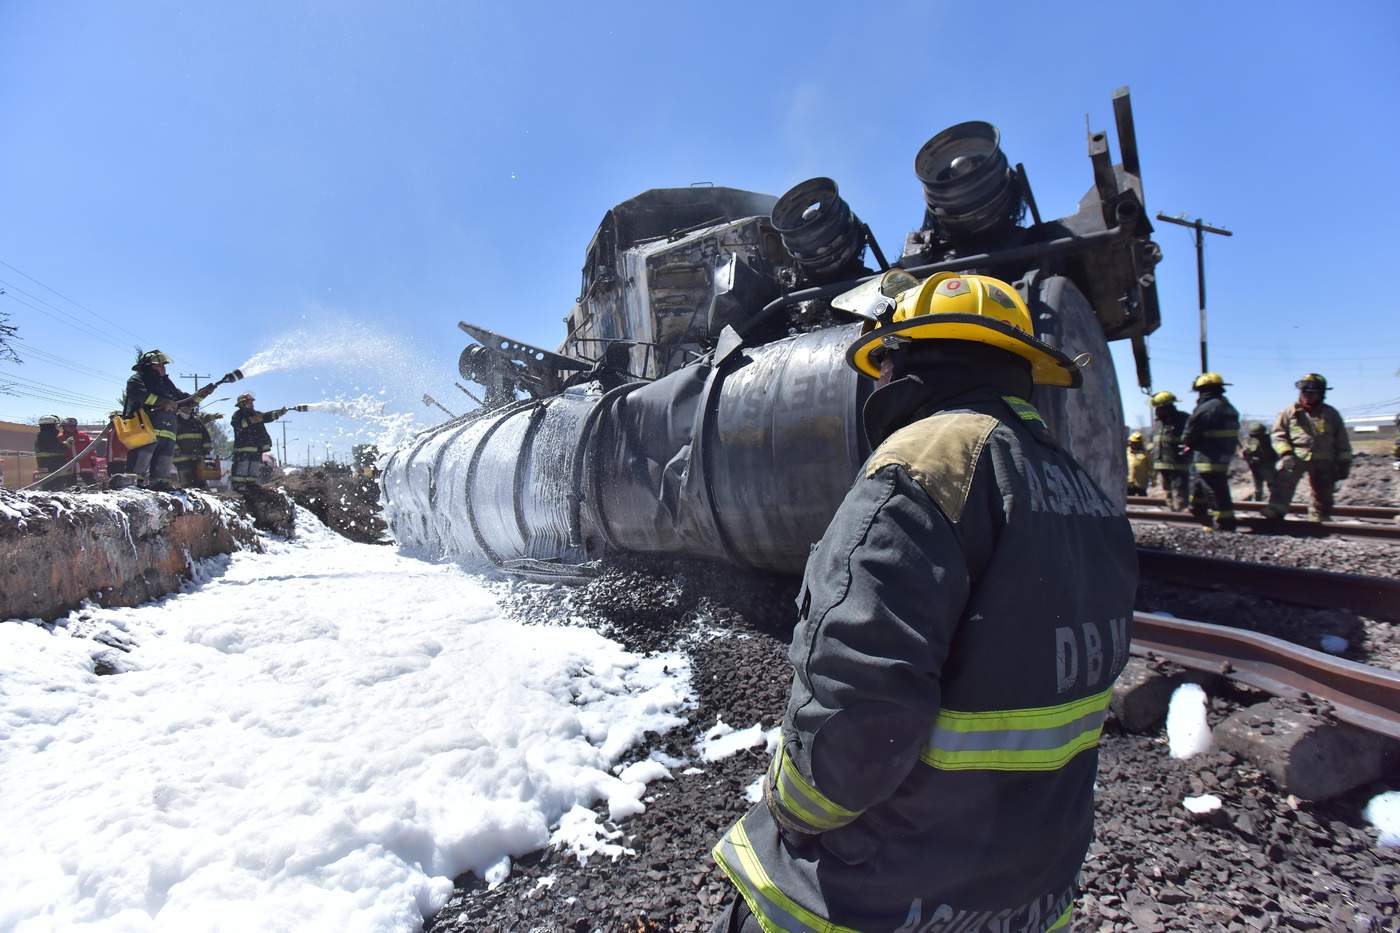 Medios nacionales reportaron una columna de humo visible a varios kilómetros, producto de la explosión e incendio del camión, propiedad de una empresa particular, tras el impacto. (EFE)